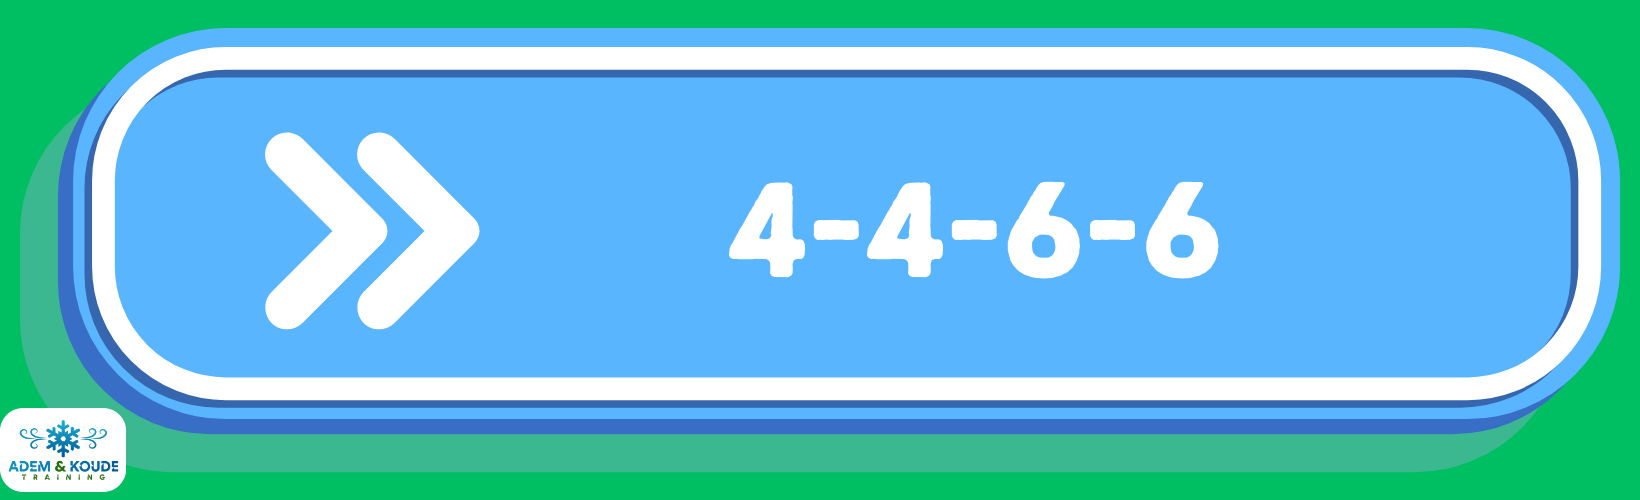 groen plaatje met blauwe wegwijzer met witte letters 4-4-6-6